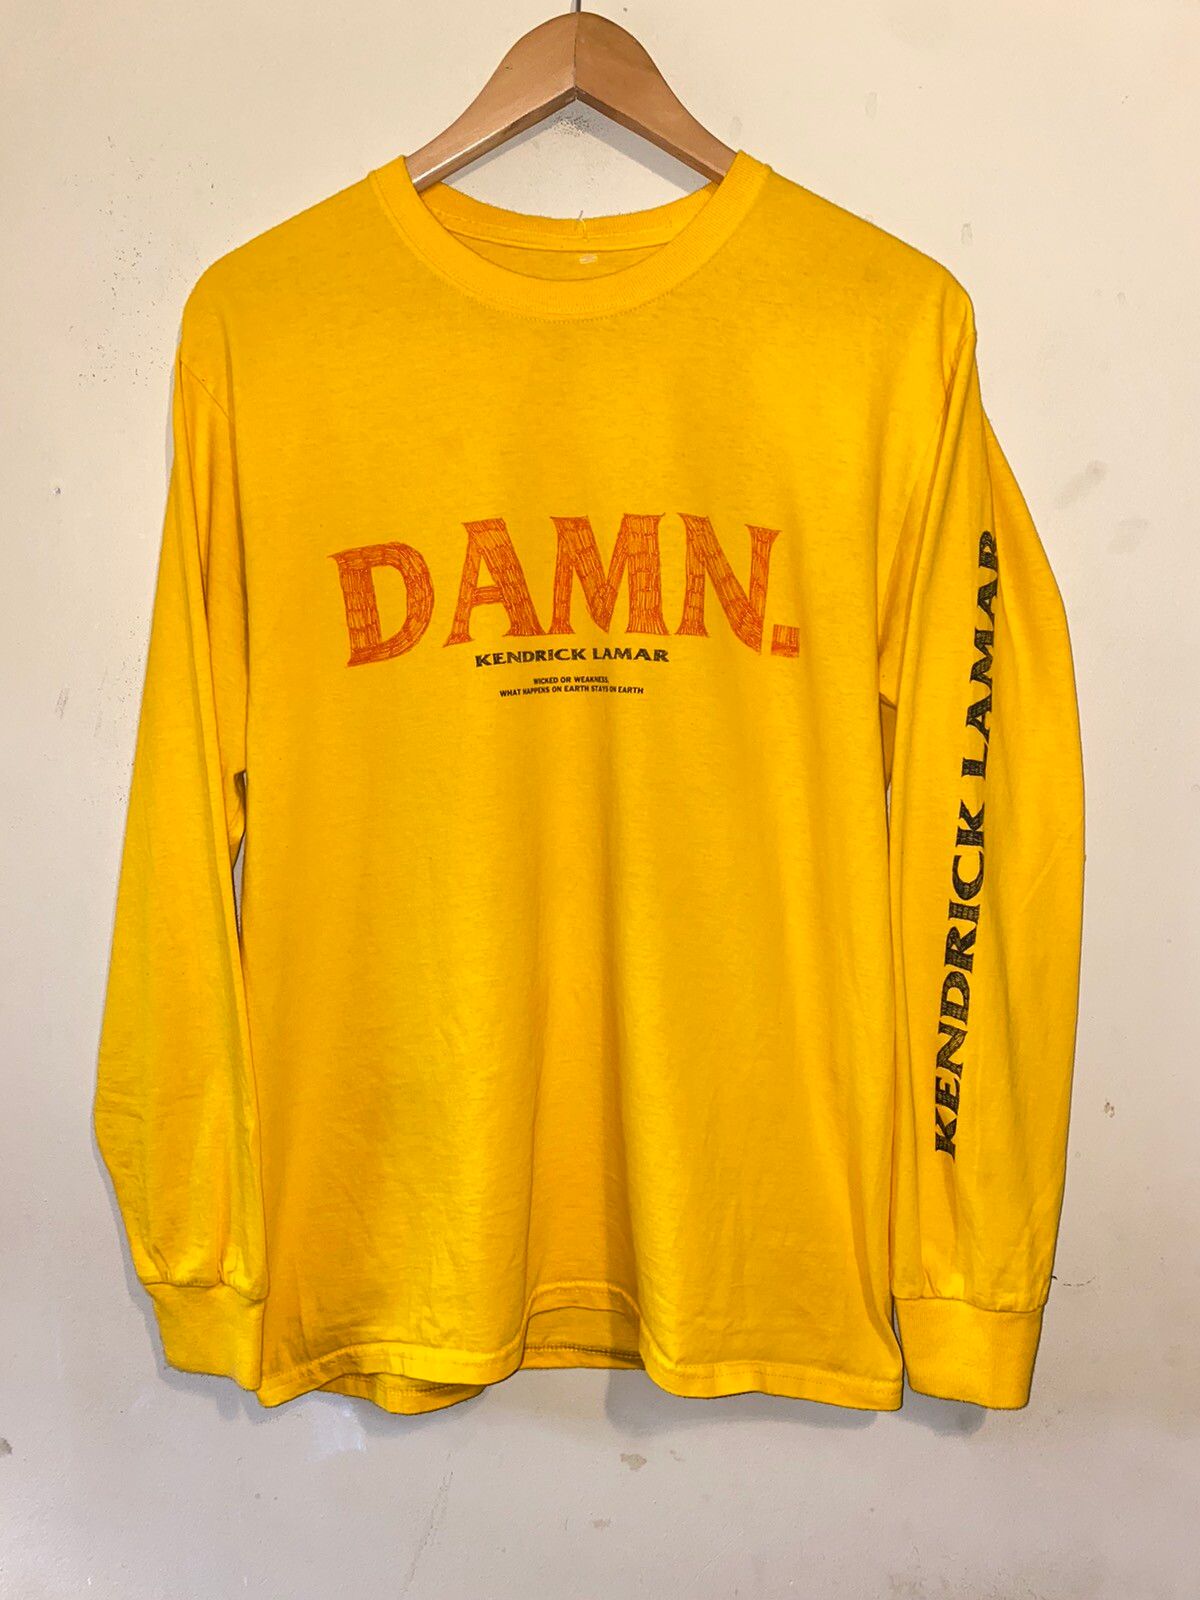 Kendrick Lamar Kendrick Lamar Damn Tour Shirt Size US M / EU 48-50 / 2 - 6 Preview